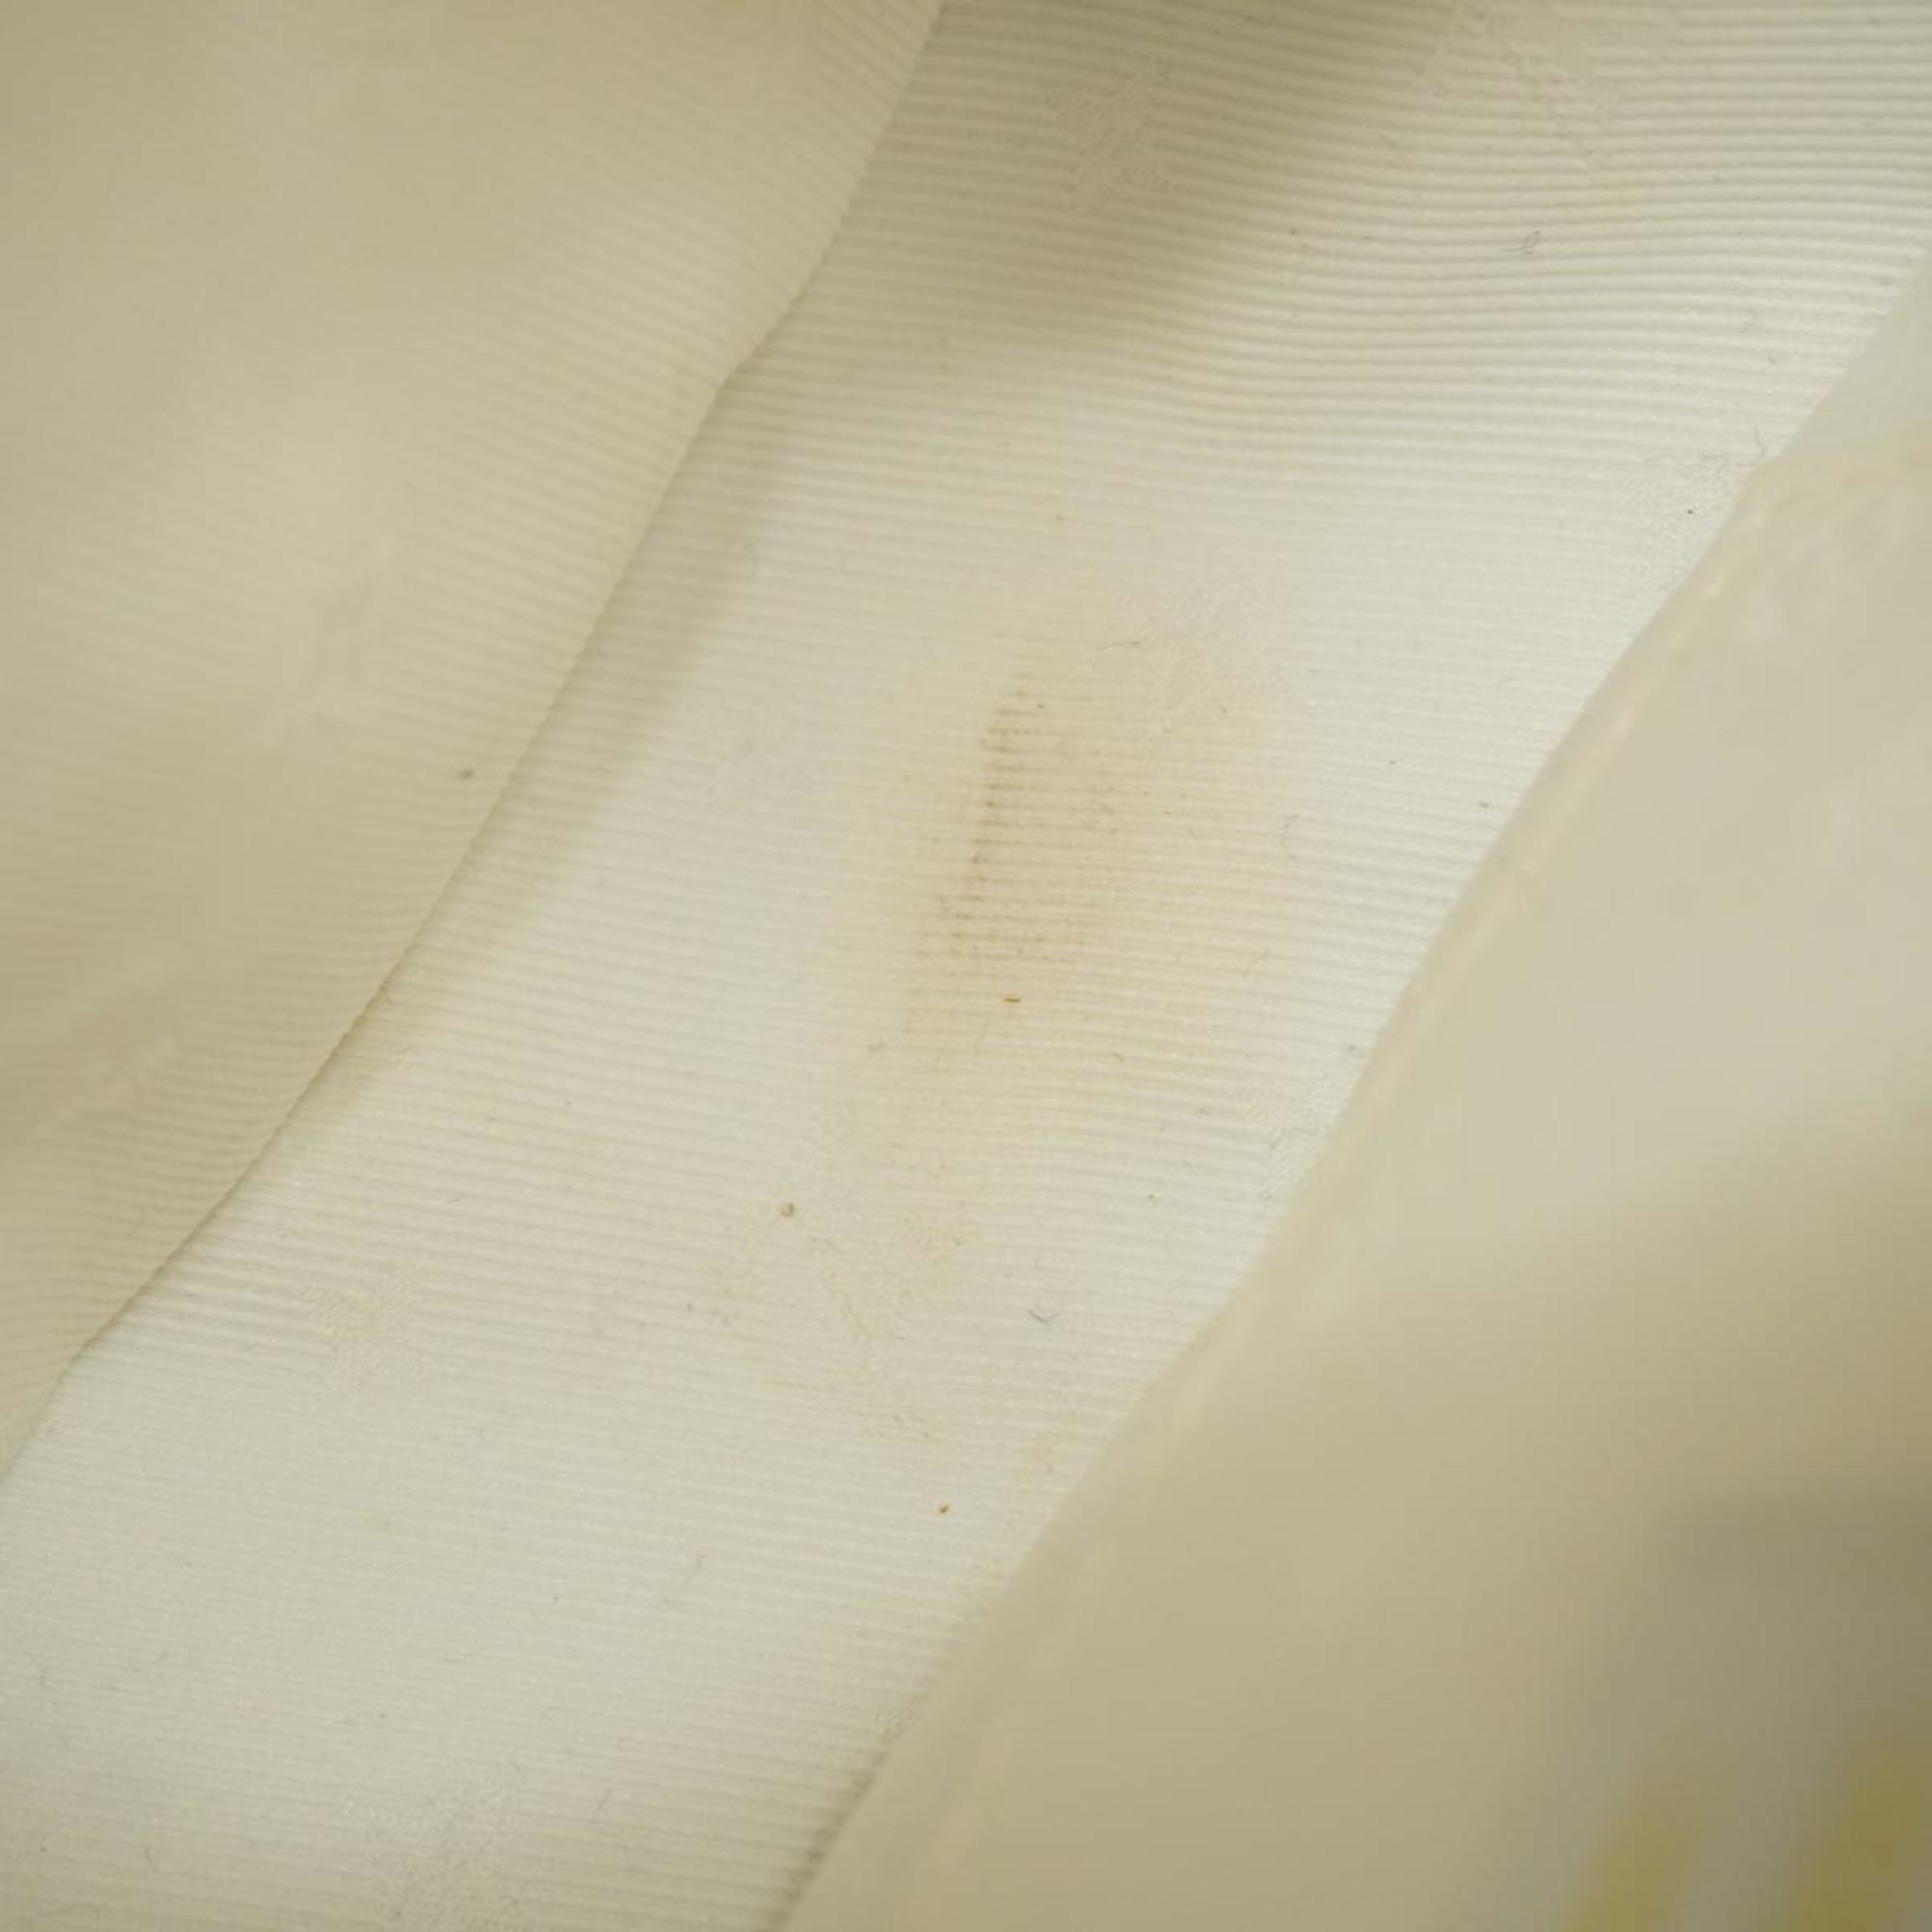 ルイ・ヴィトン(Louis Vuitton) ルイ・ヴィトン ハンドバッグ オーバーザムーン M59959 ホワイトレディース